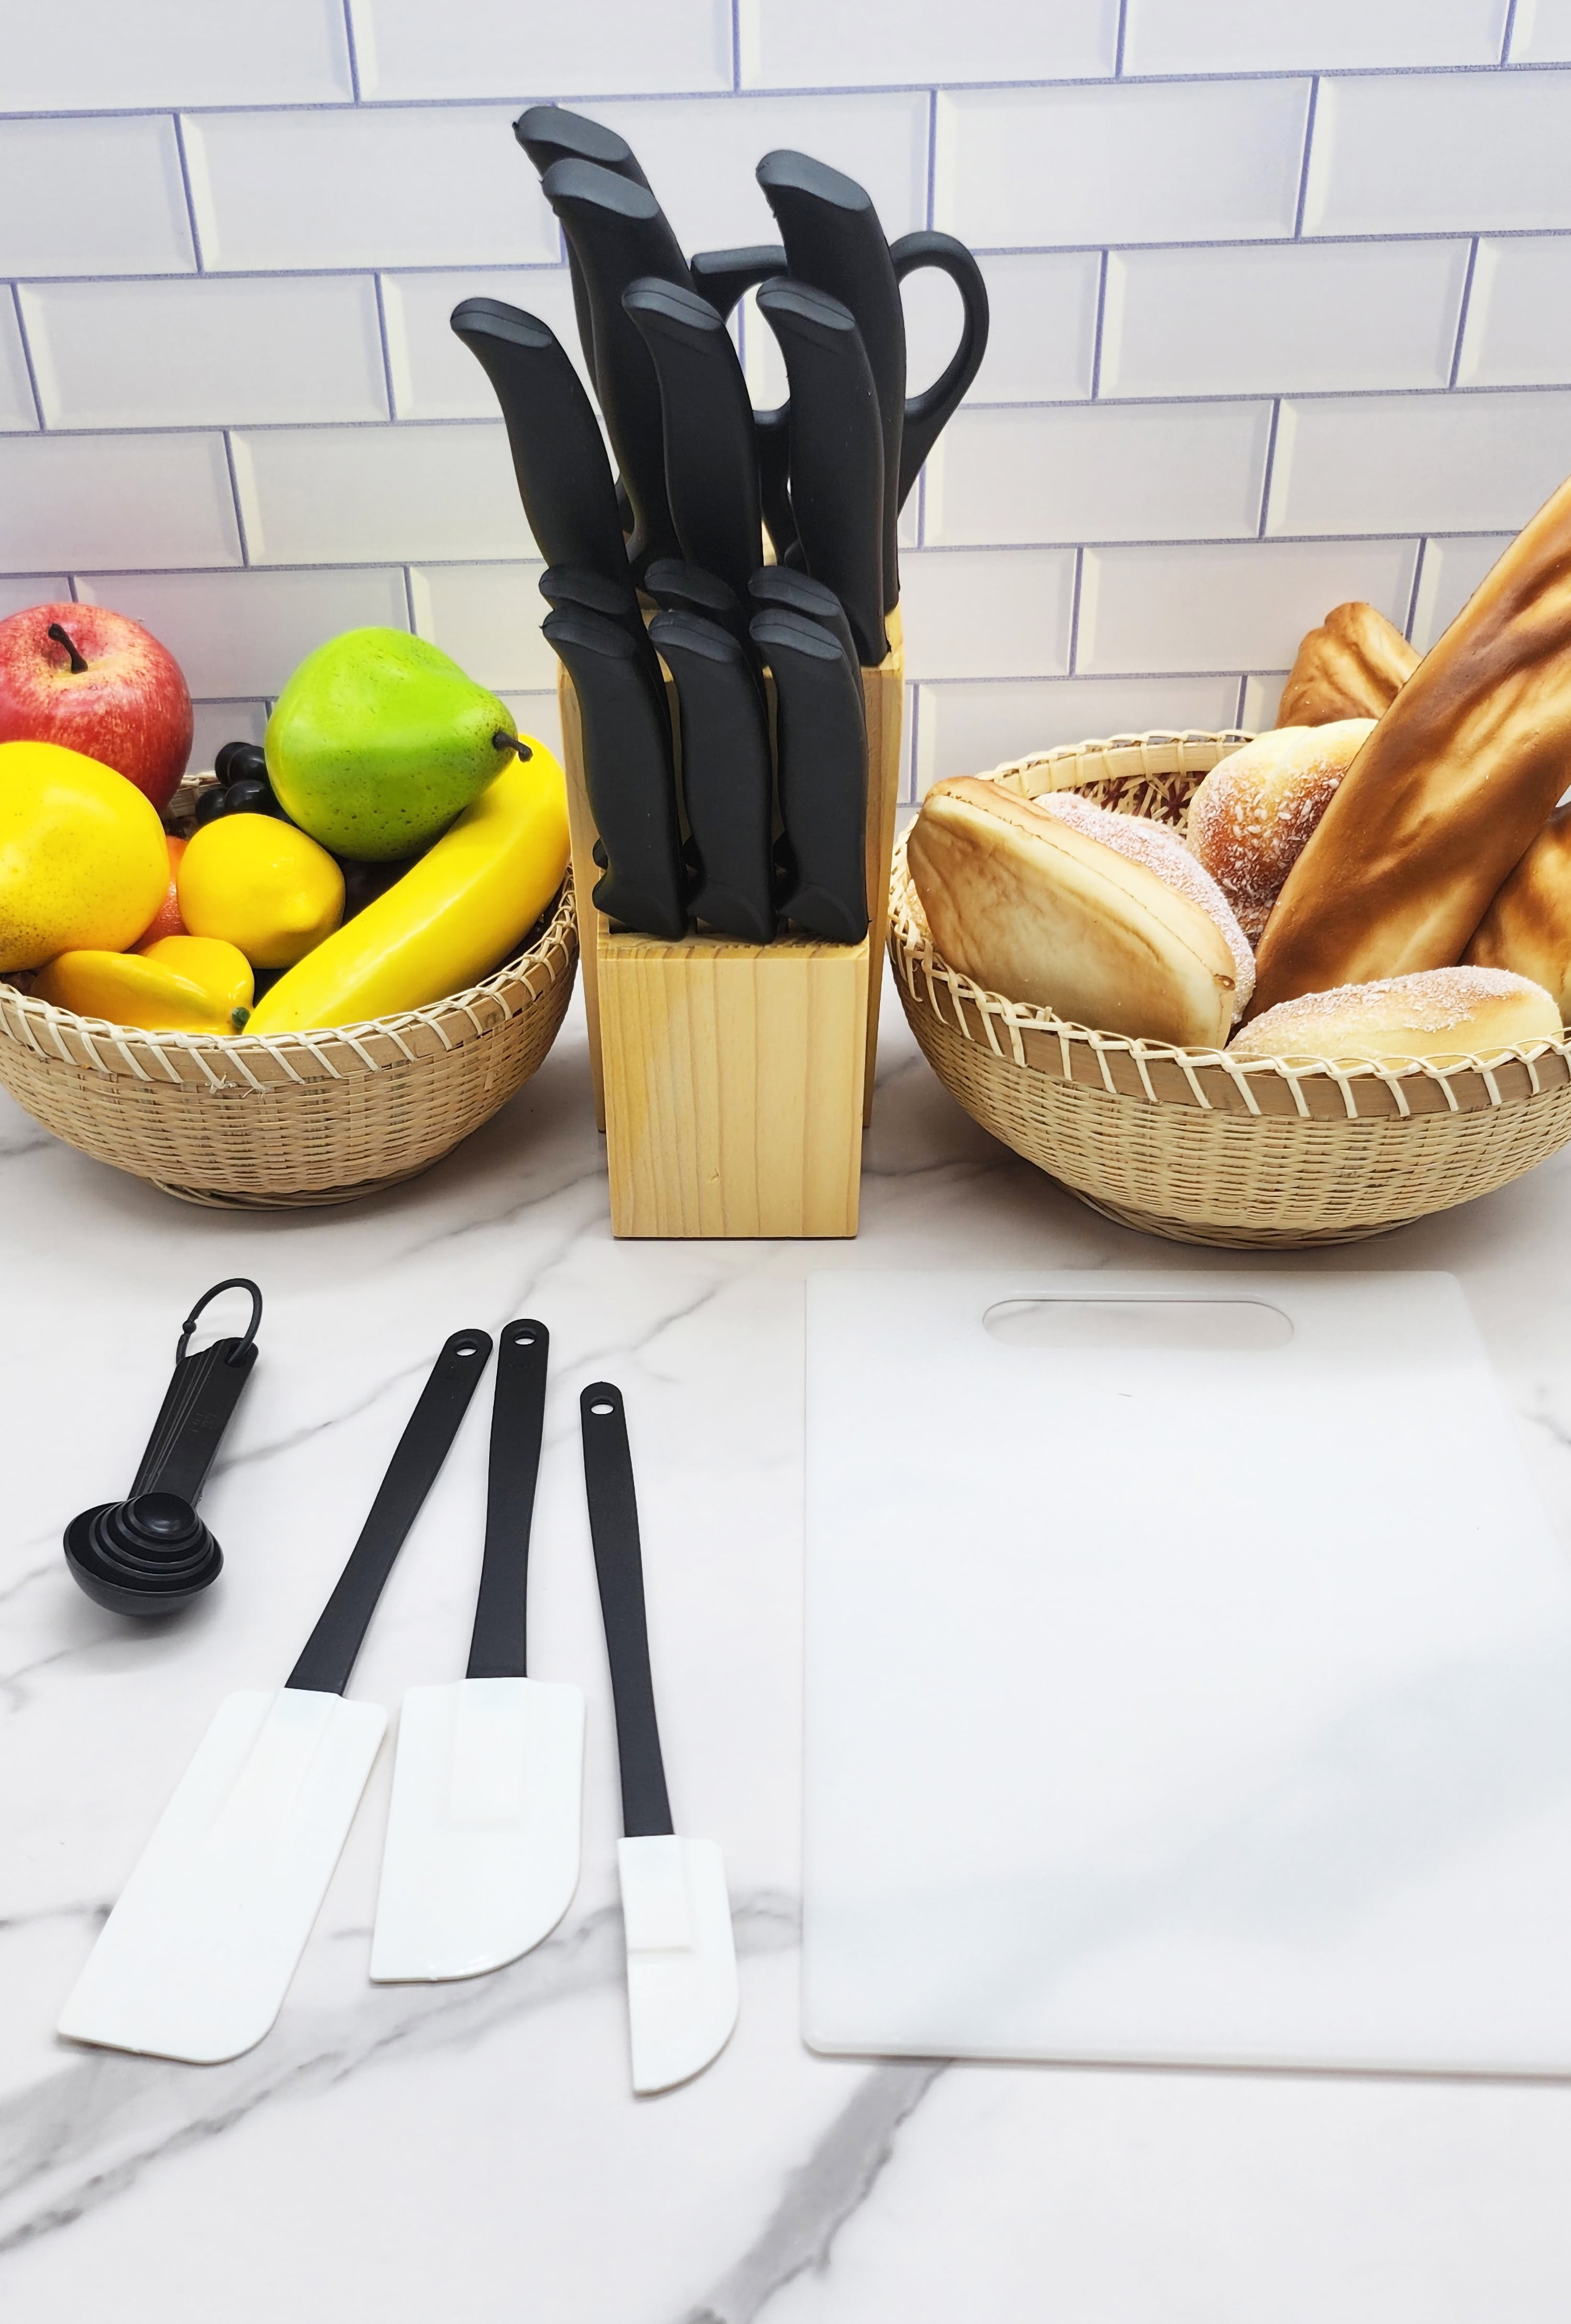 23-piece Never Needs Sharpening Dishwasher Safe Cutlery and Utensil Set in  Black Vianderos para viandas y frutas de cocina Cockt